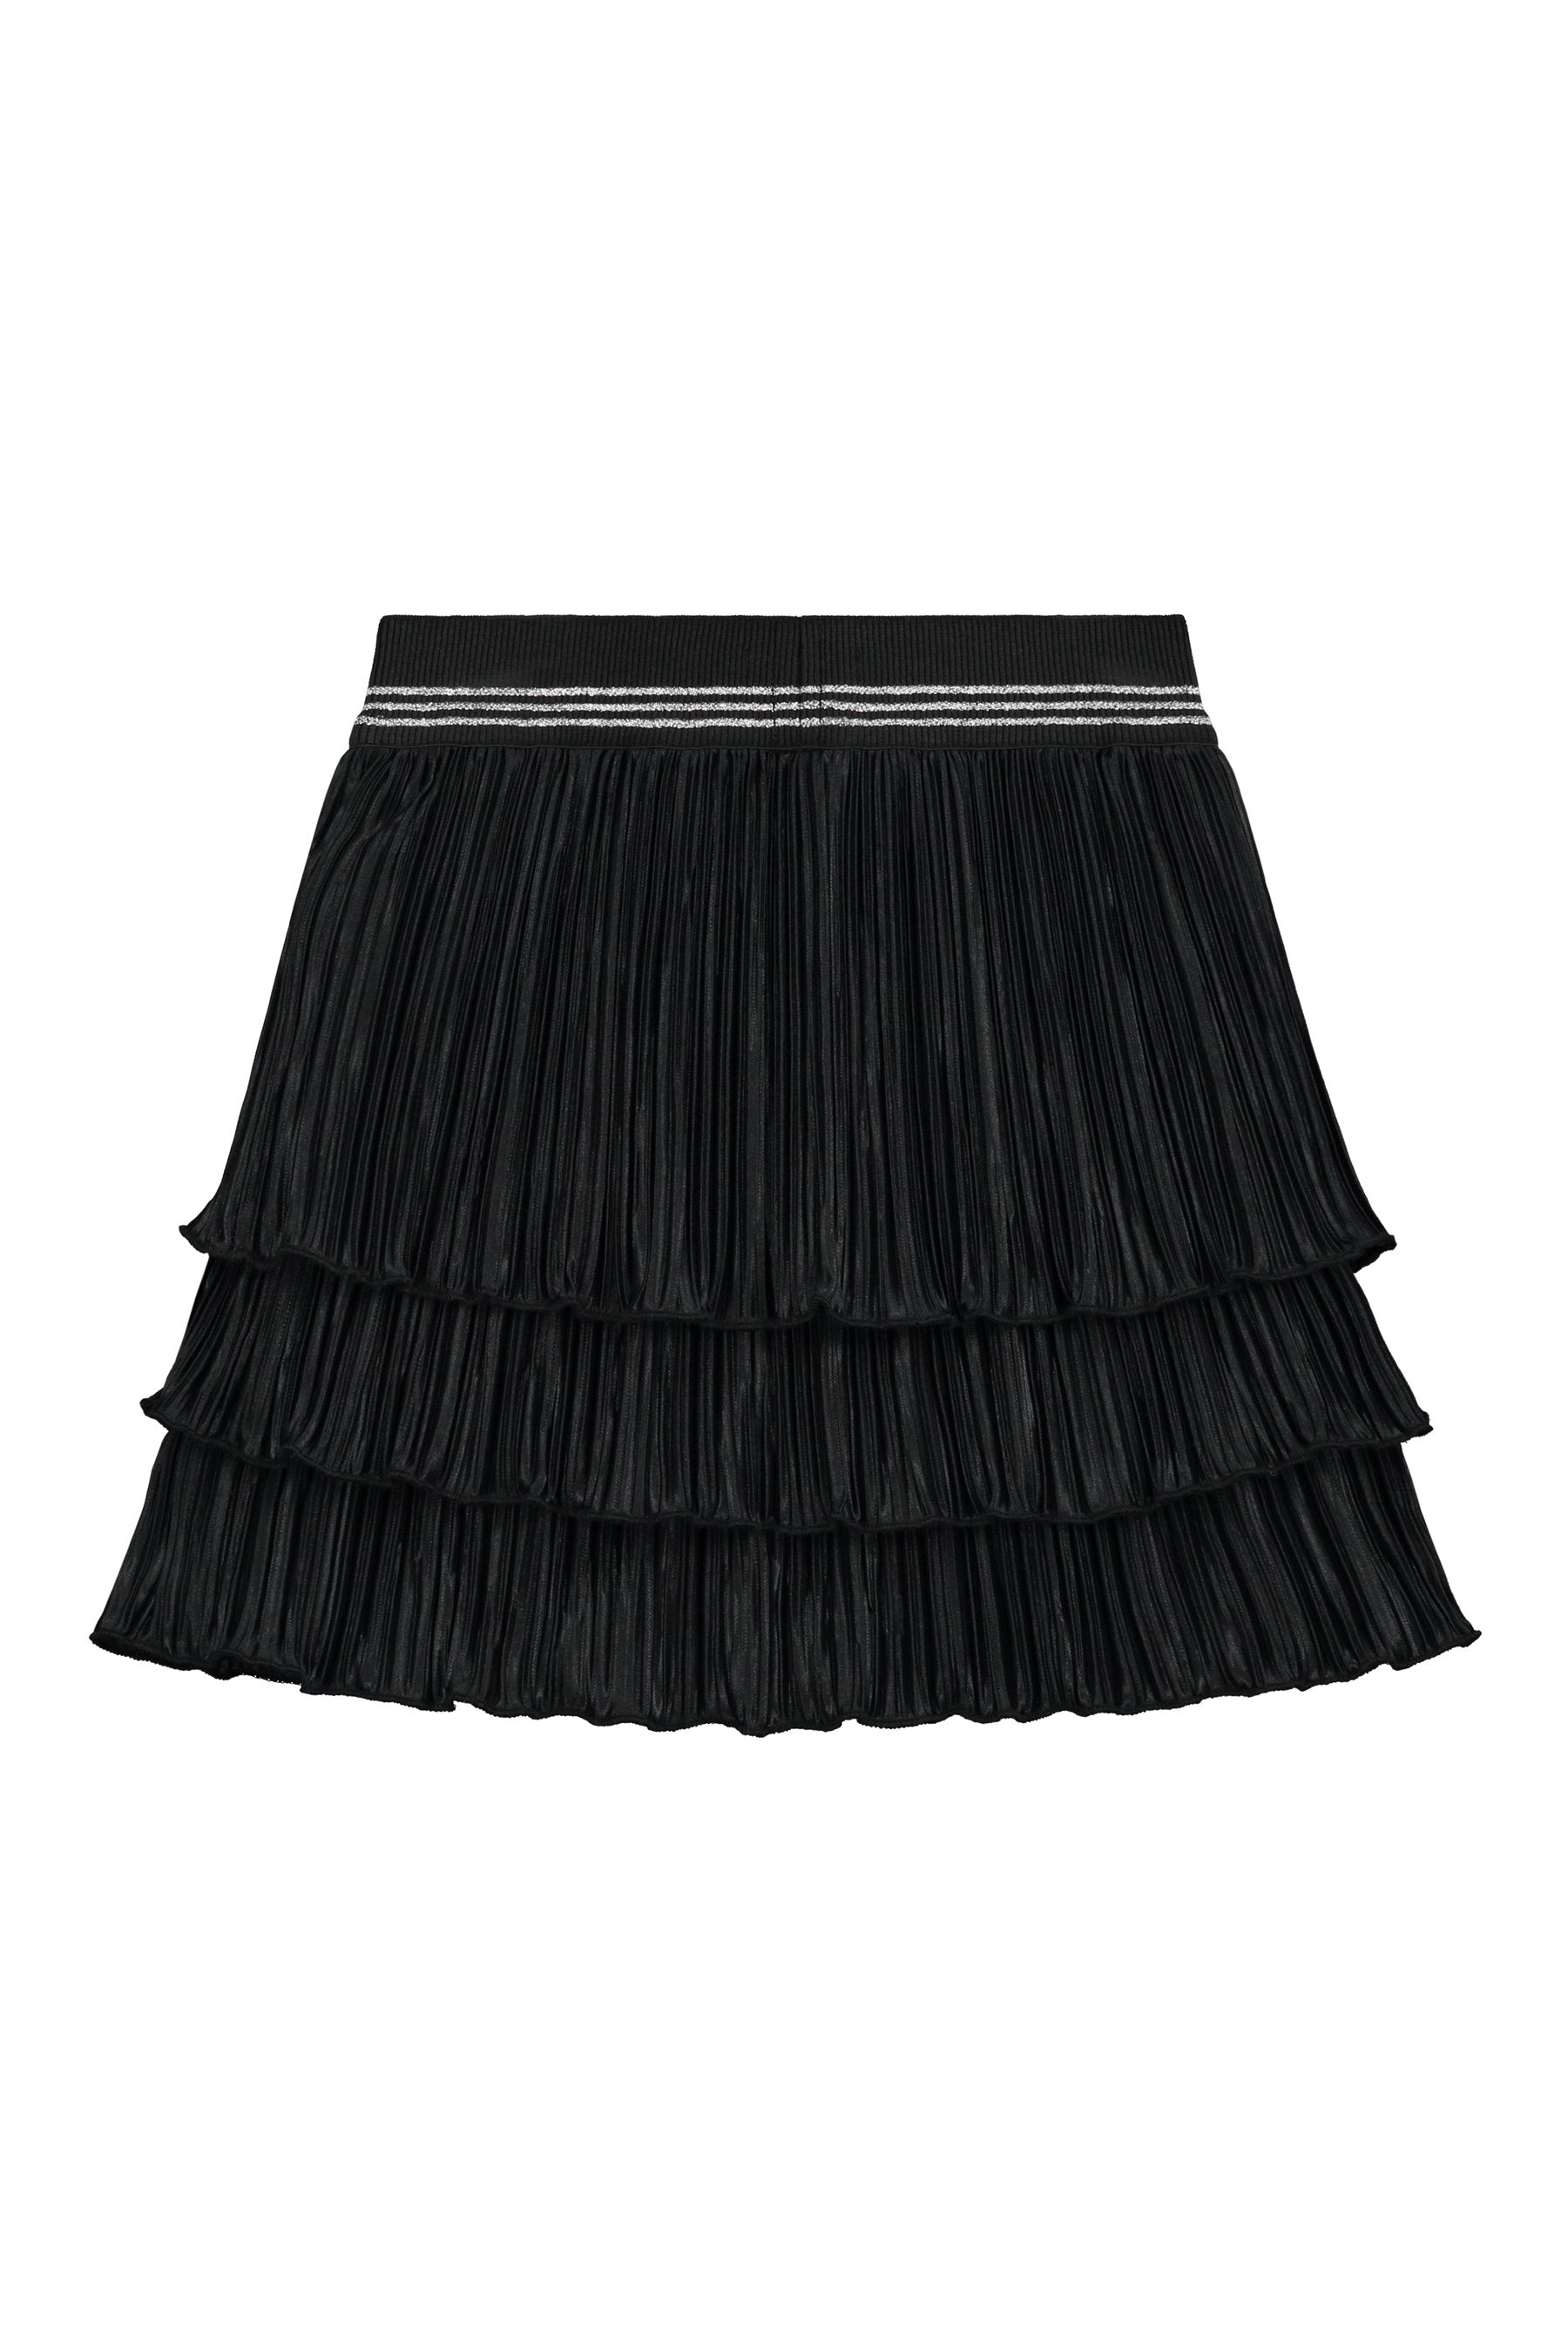 Meisjes Skirt van Little Levv in de kleur Black in maat 116.